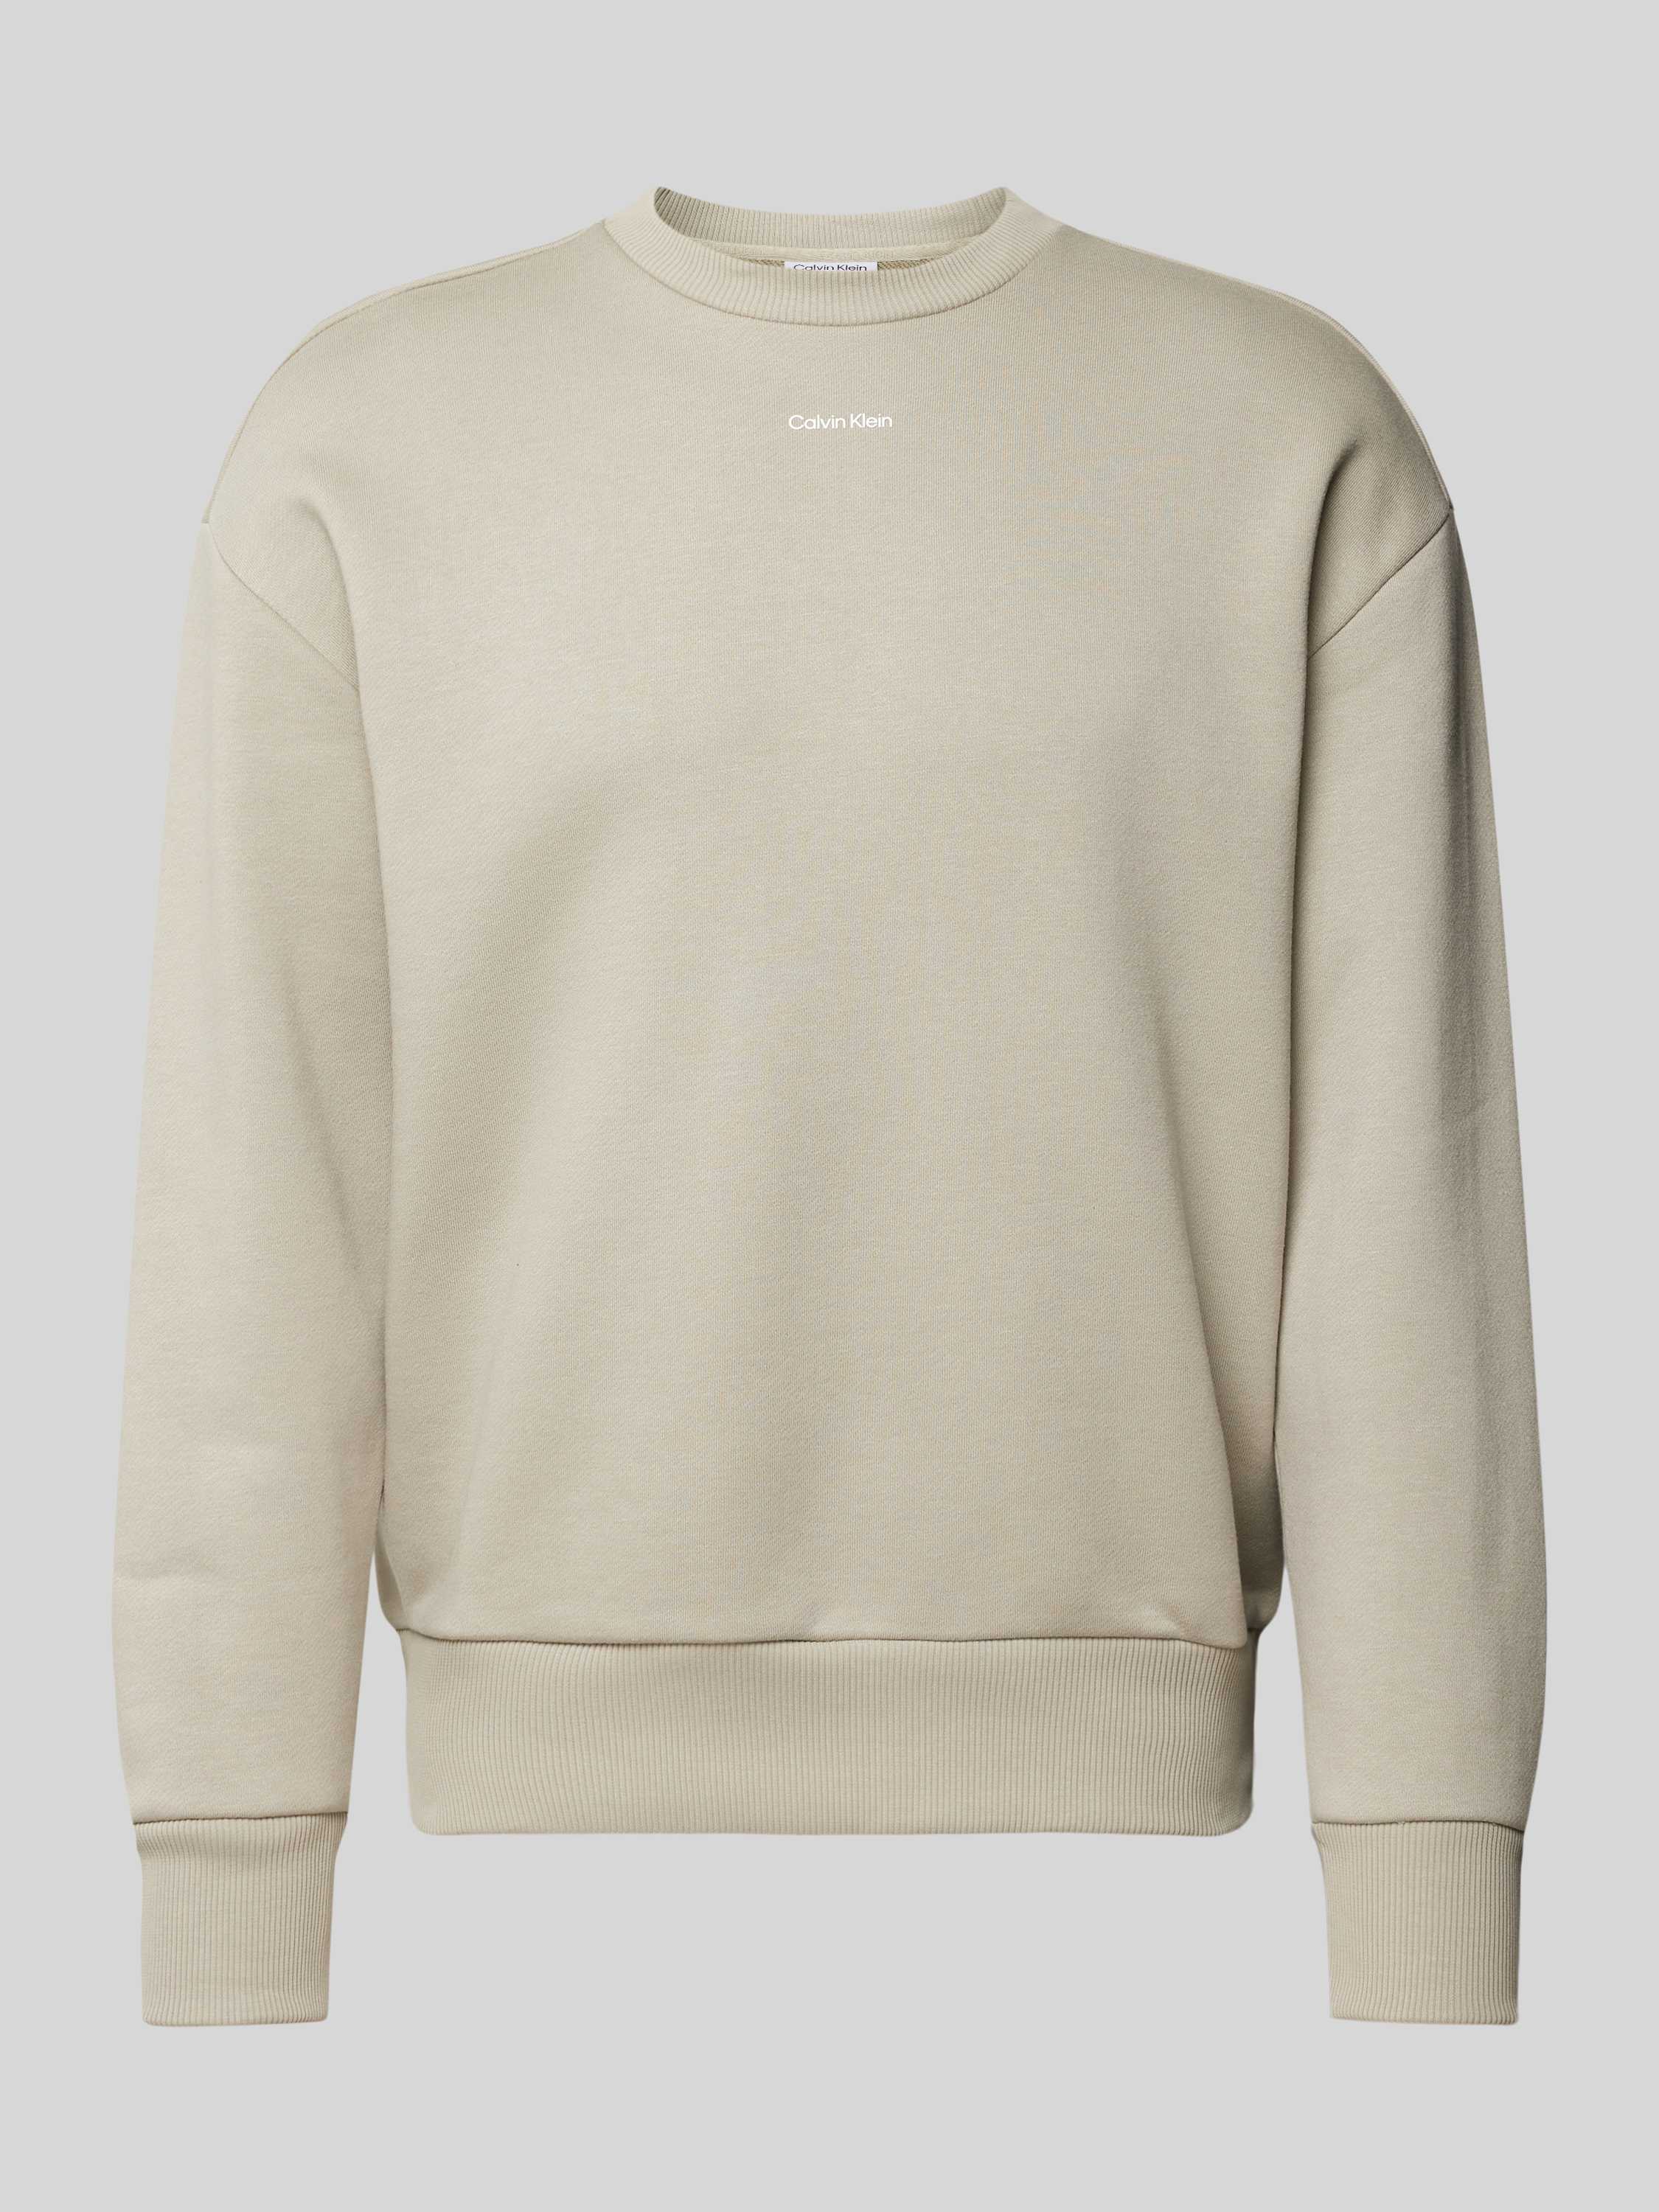 CK Calvin Klein Sweatshirt met labelprint model 'NANO'